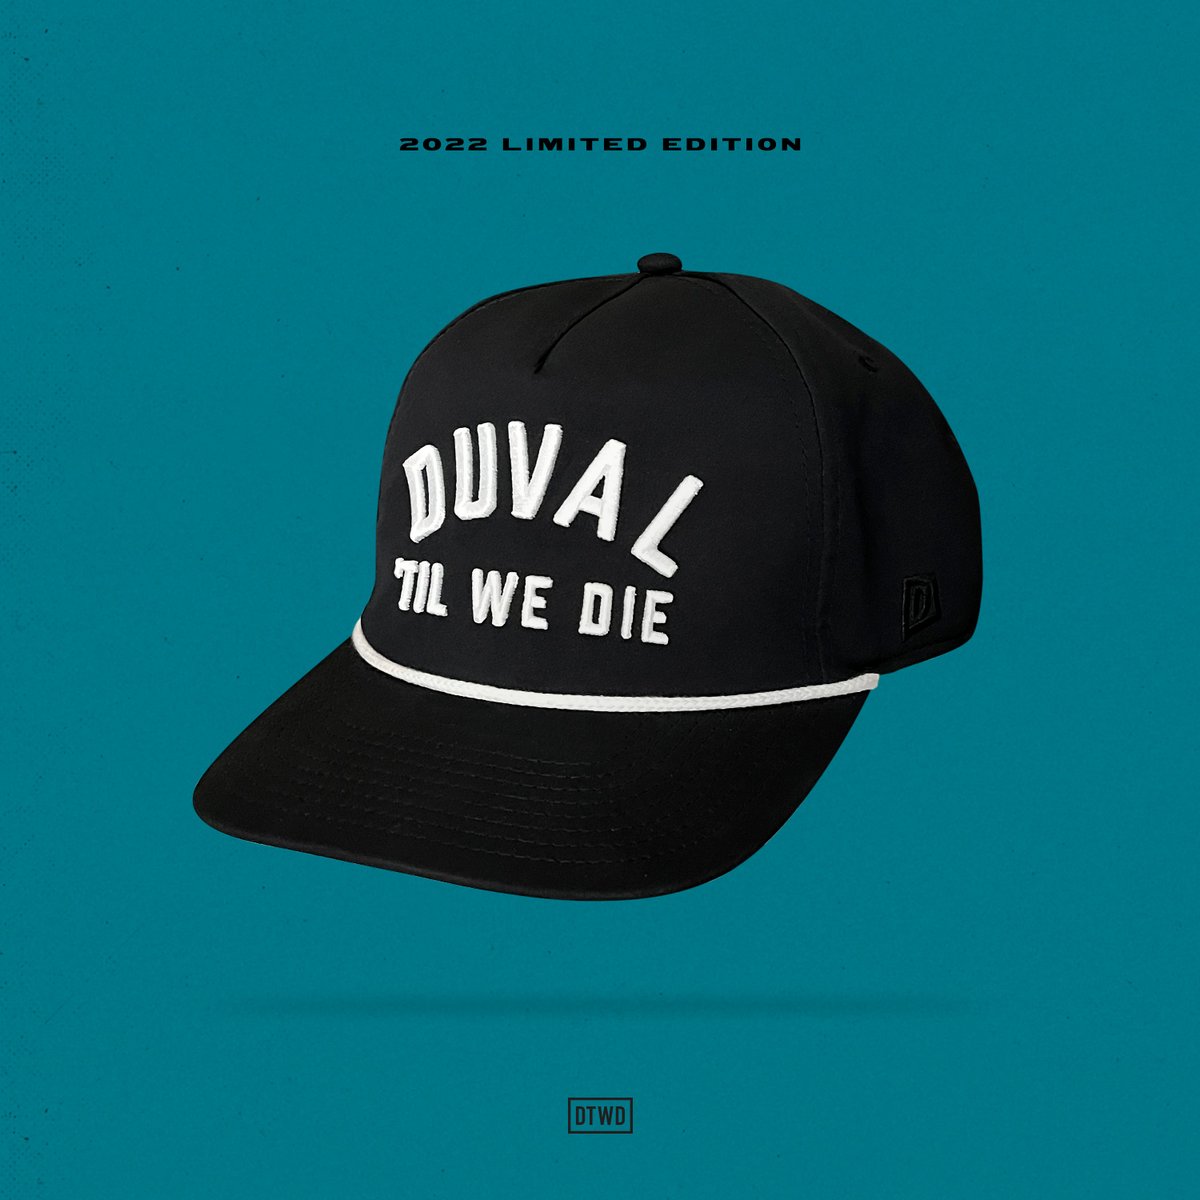 Image of Duval Til We Die - black rope hat 